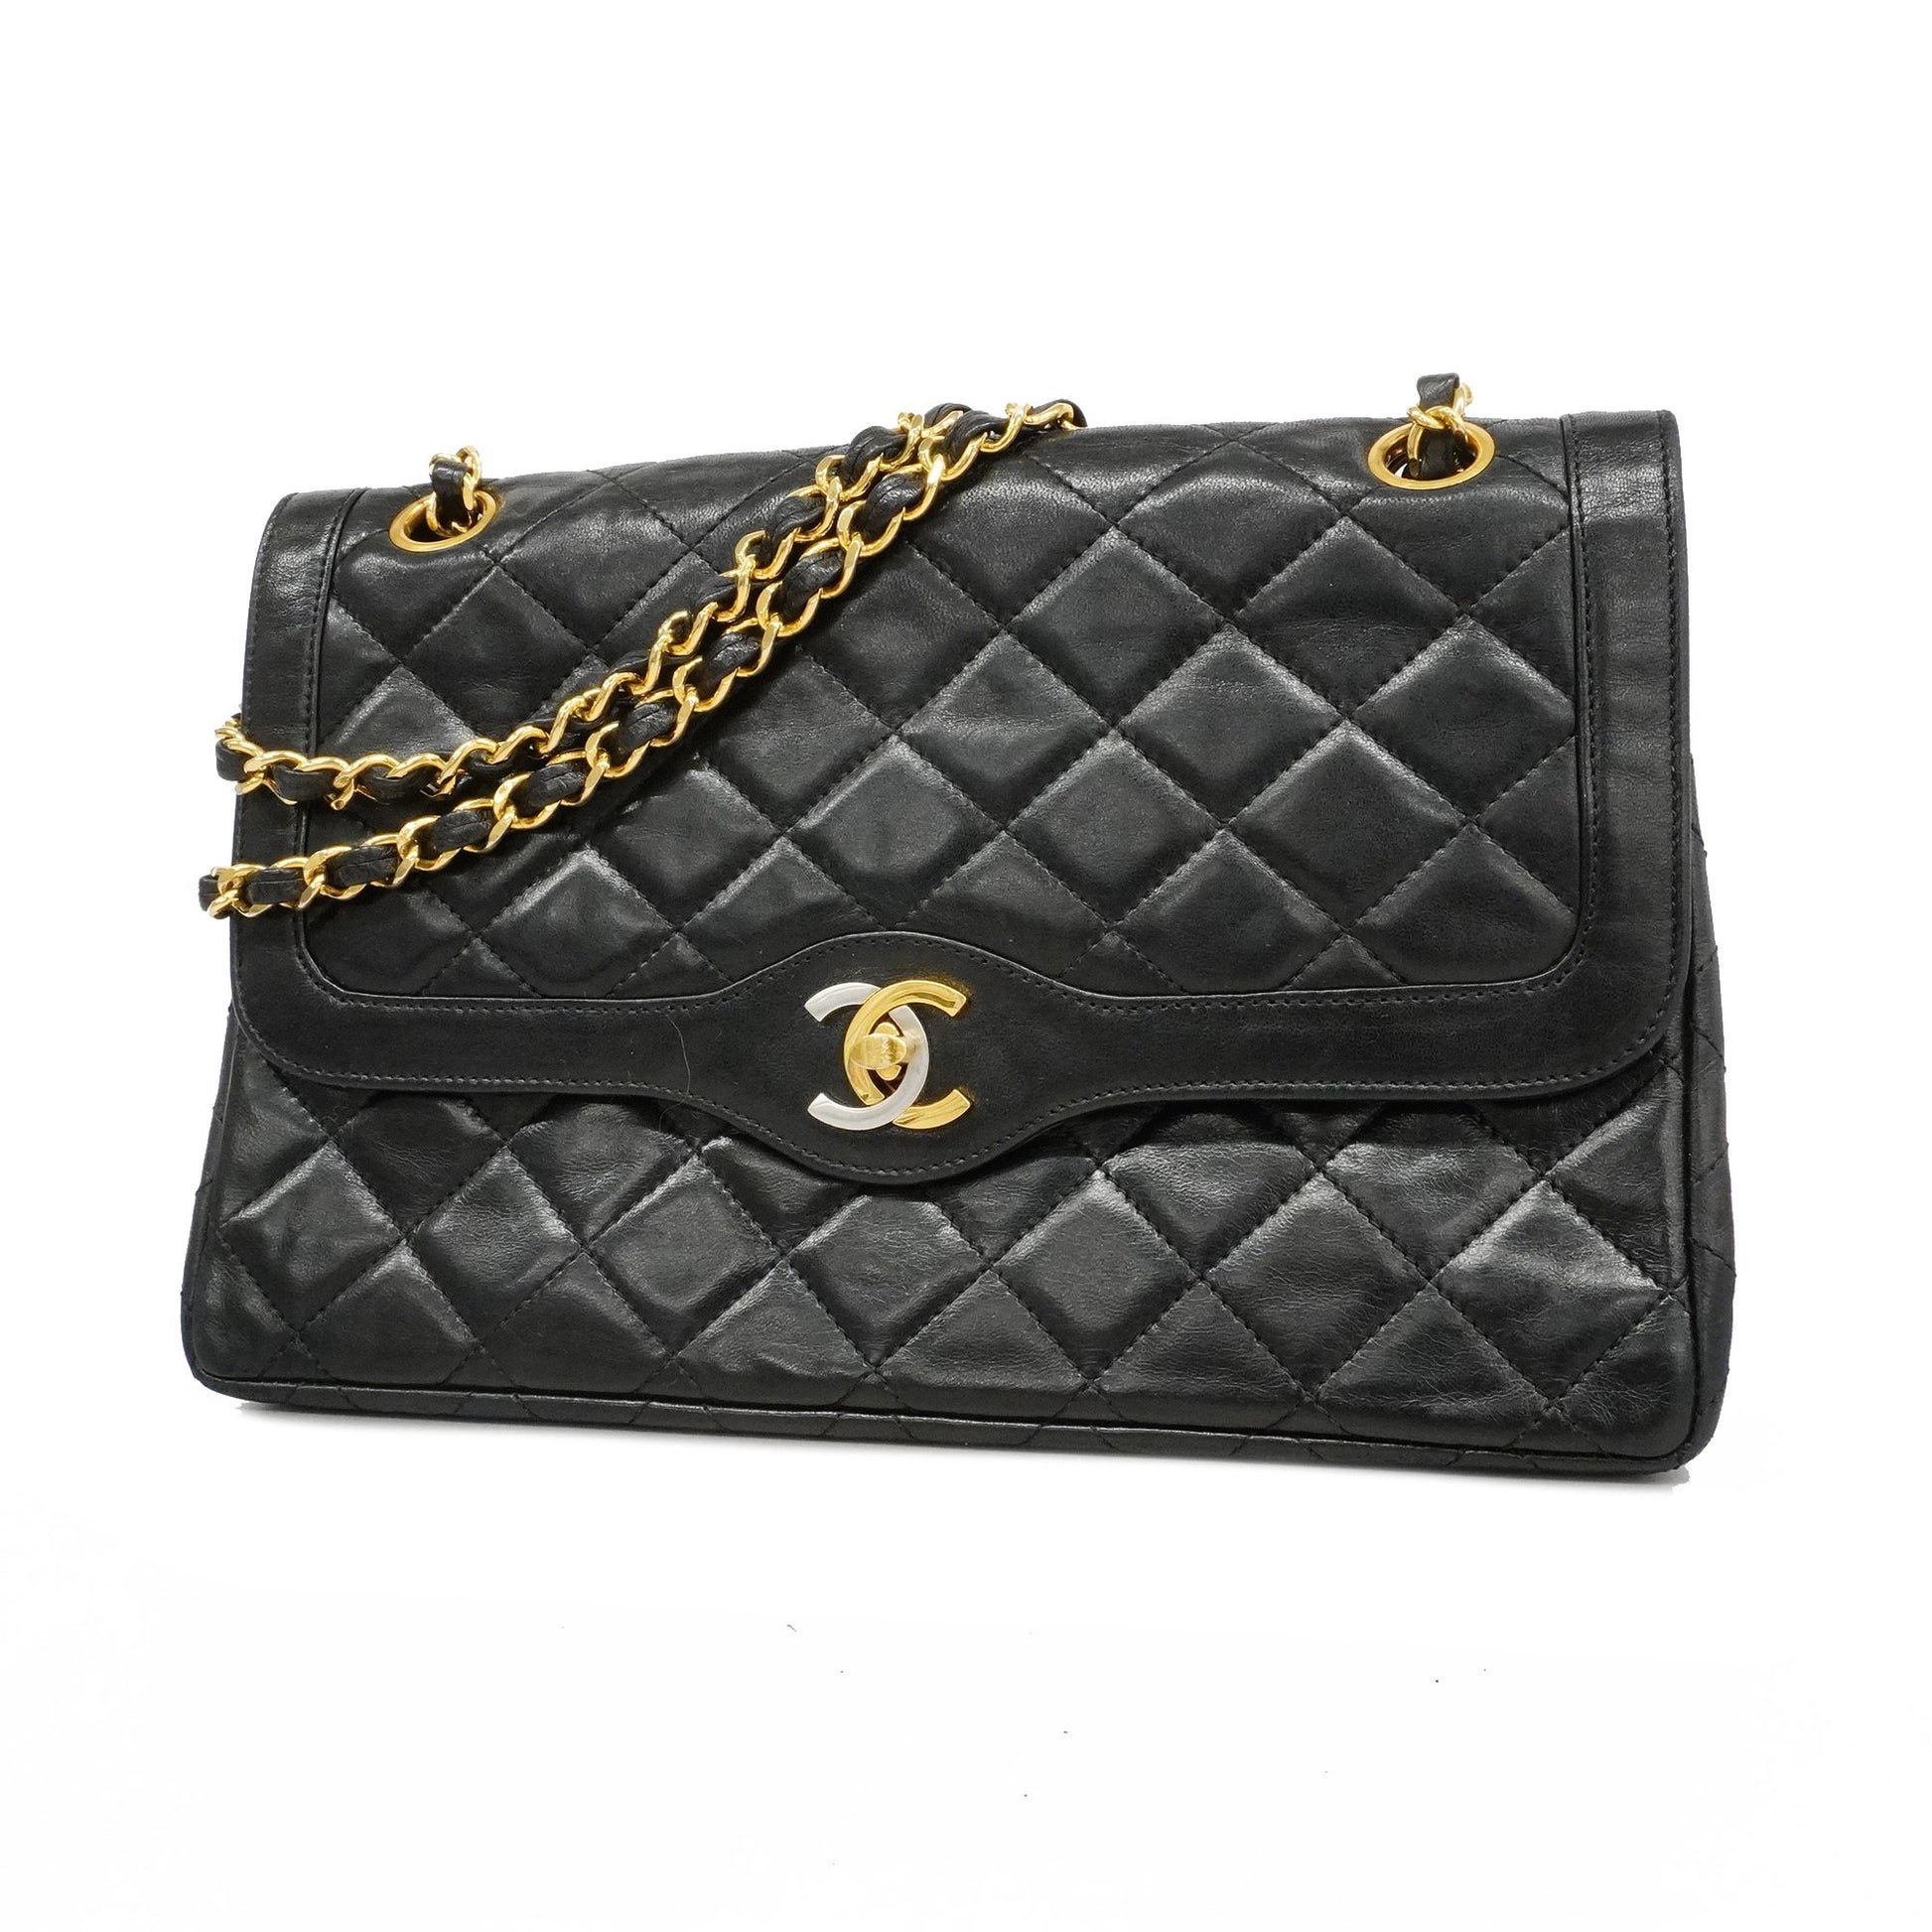 Chanel matelasse Paris limited W chain flap shoulder bag gold silver m